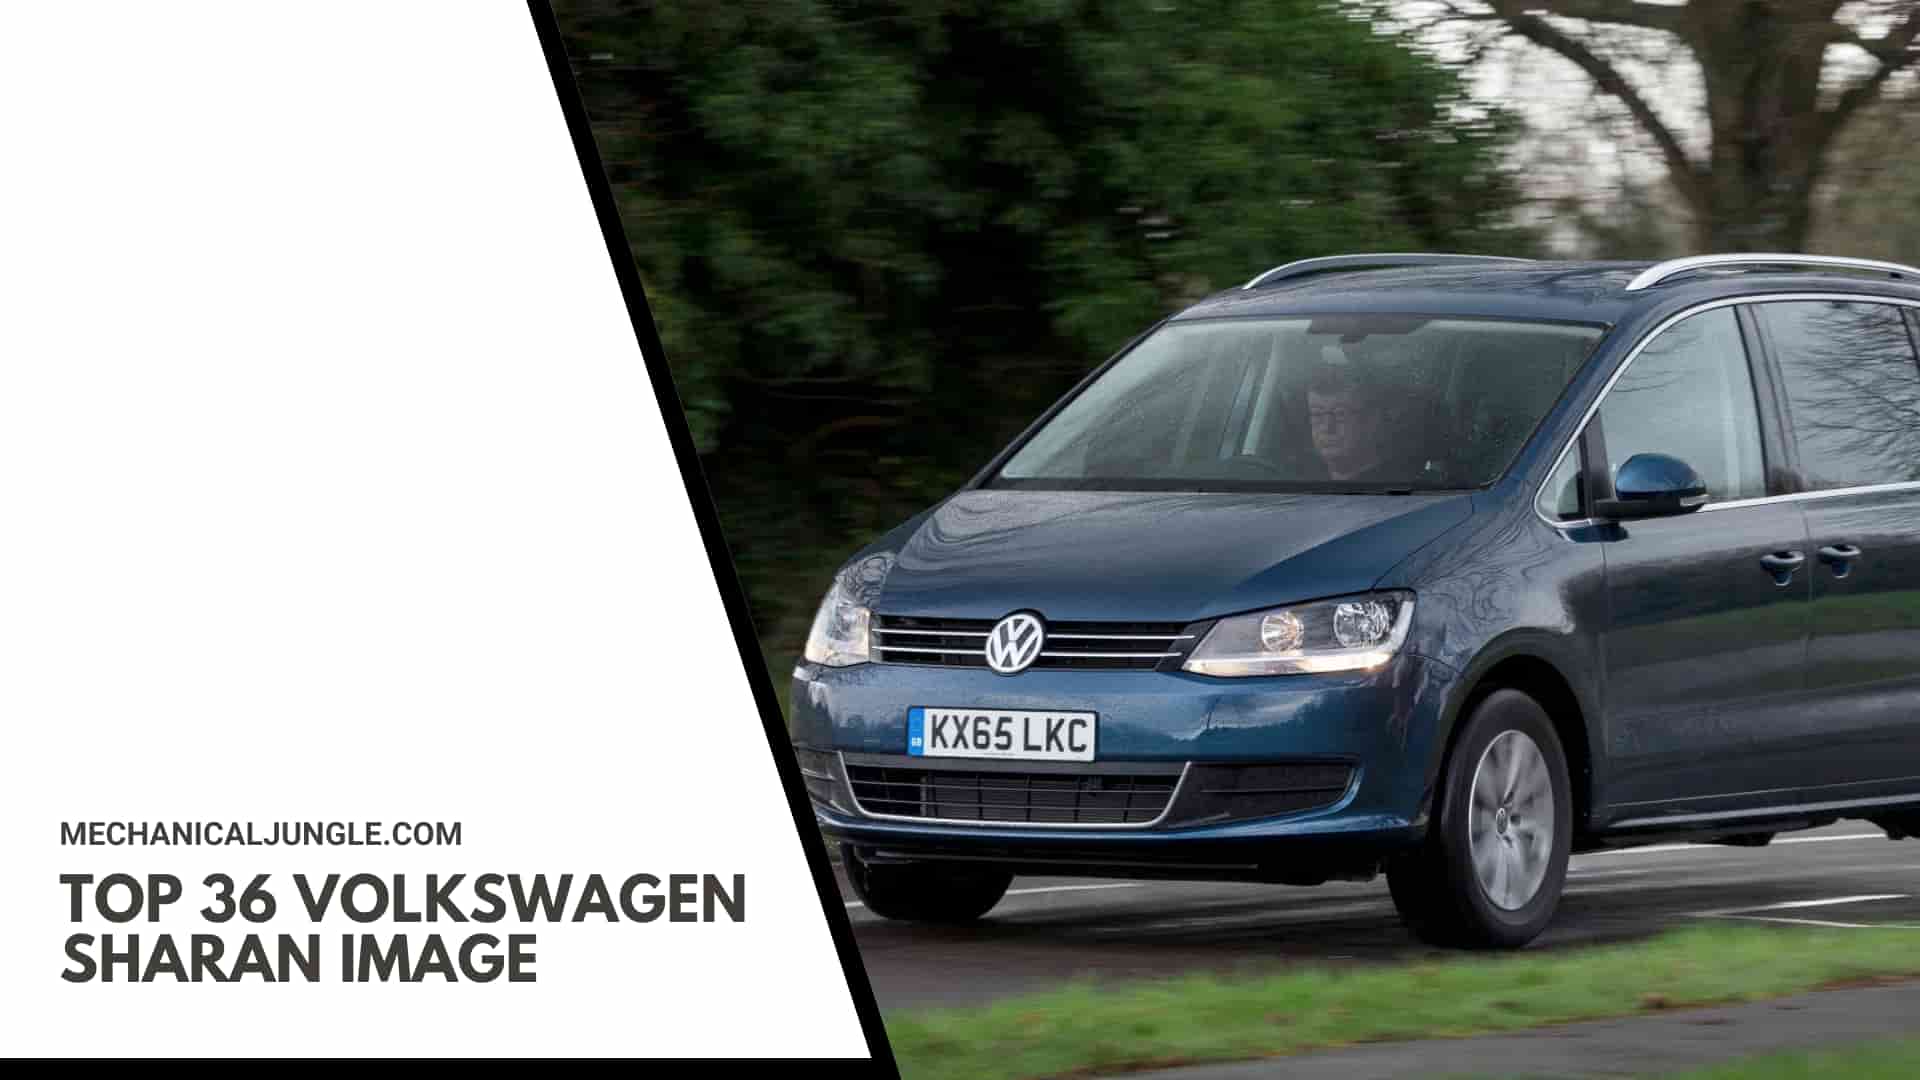 Top 36 Volkswagen Sharan Image